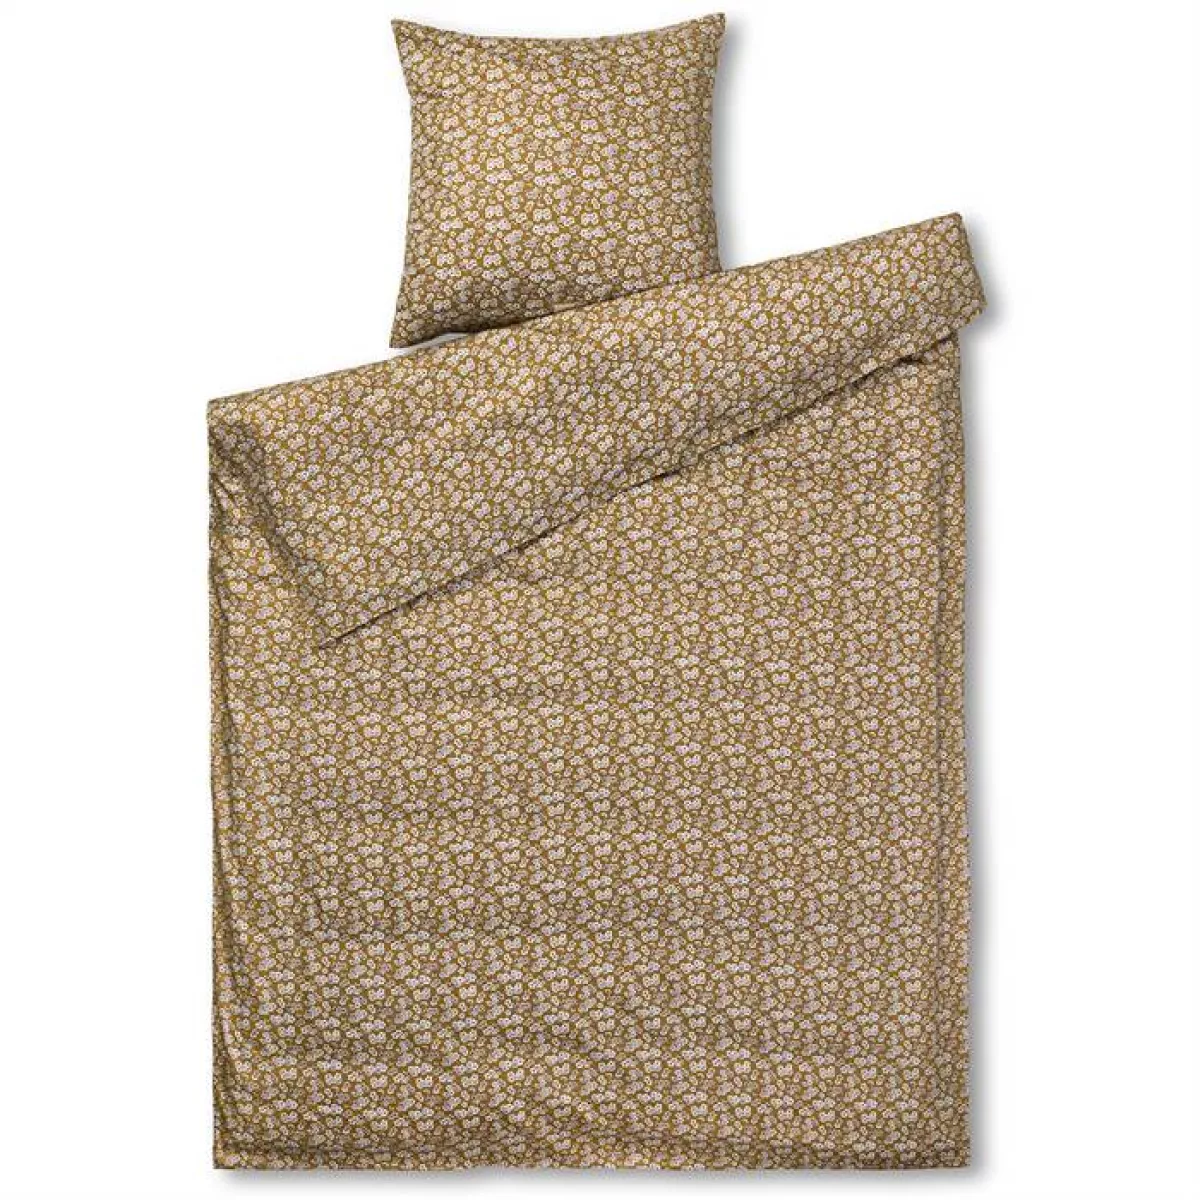 #3 - Juna Pleasantly sengetøj - Mustard - 140 x 200 cm